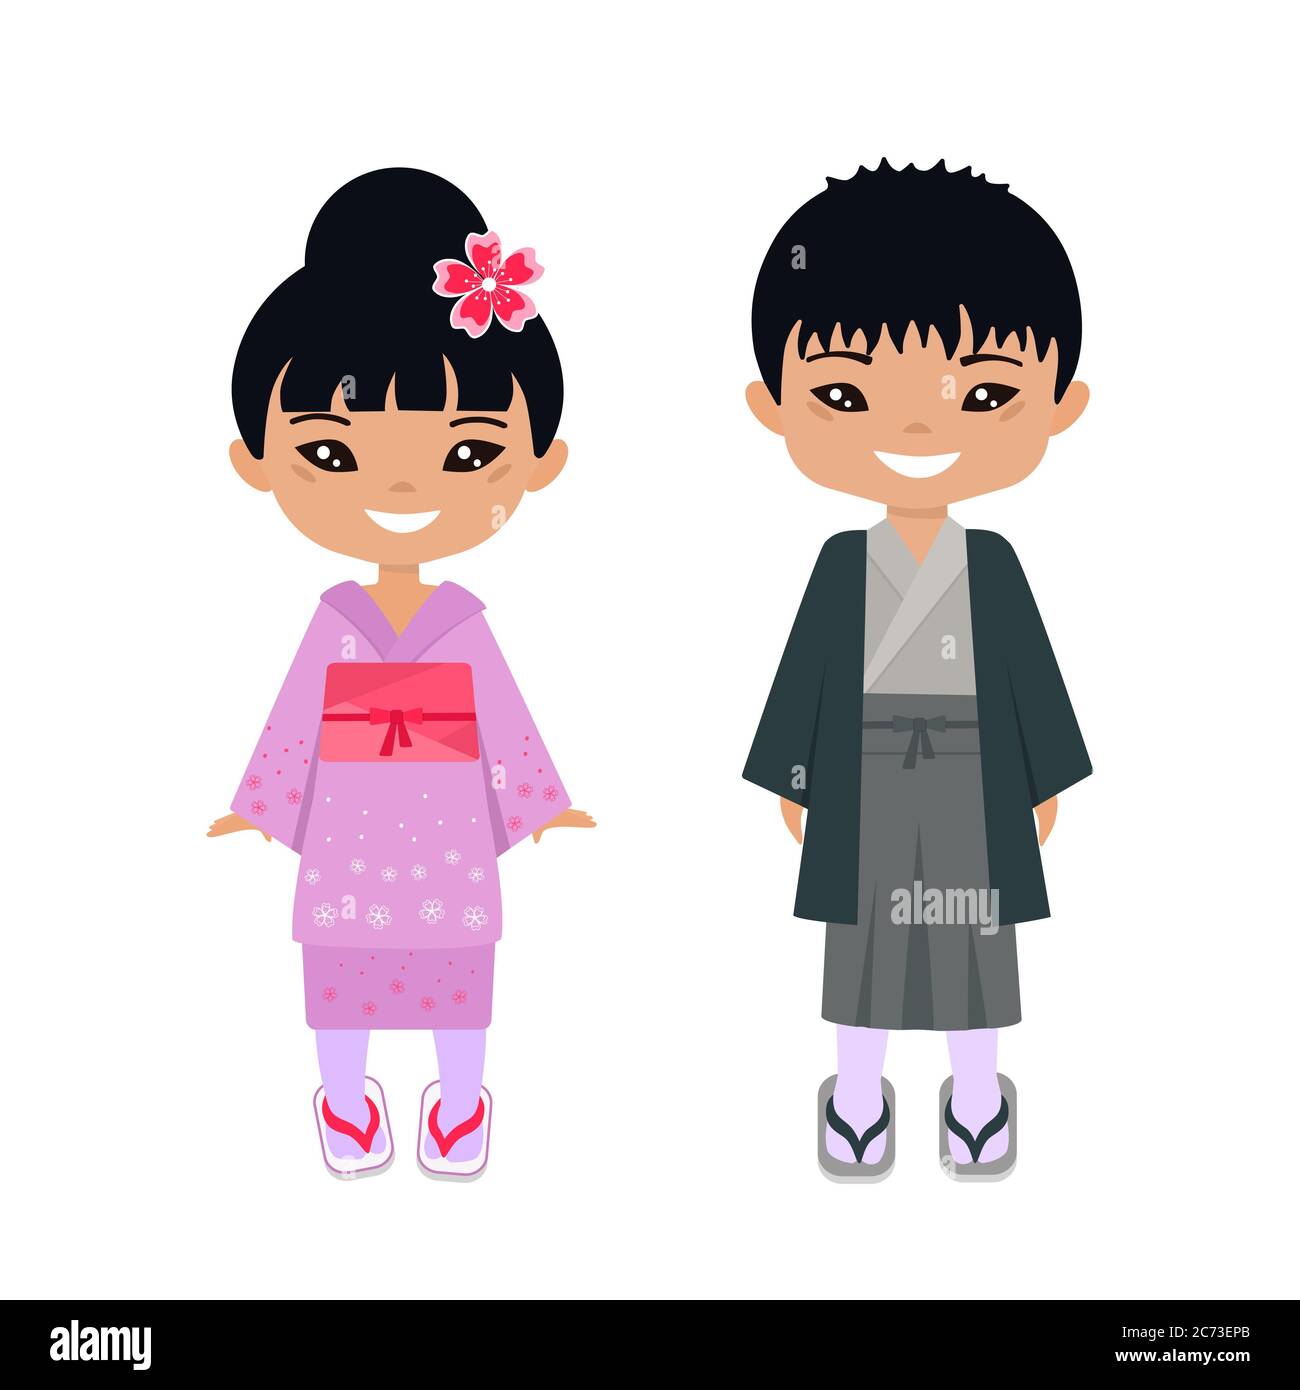 Trang phục truyền thống của Nhật Bản rất đa dạng và đẹp mắt. Những nhân vật chibi mang trang phục này thật đáng yêu và độc đáo. Hãy cùng xem ảnh liên quan đến từ khóa này và khám phá thế giới chibi Nhật Bản.